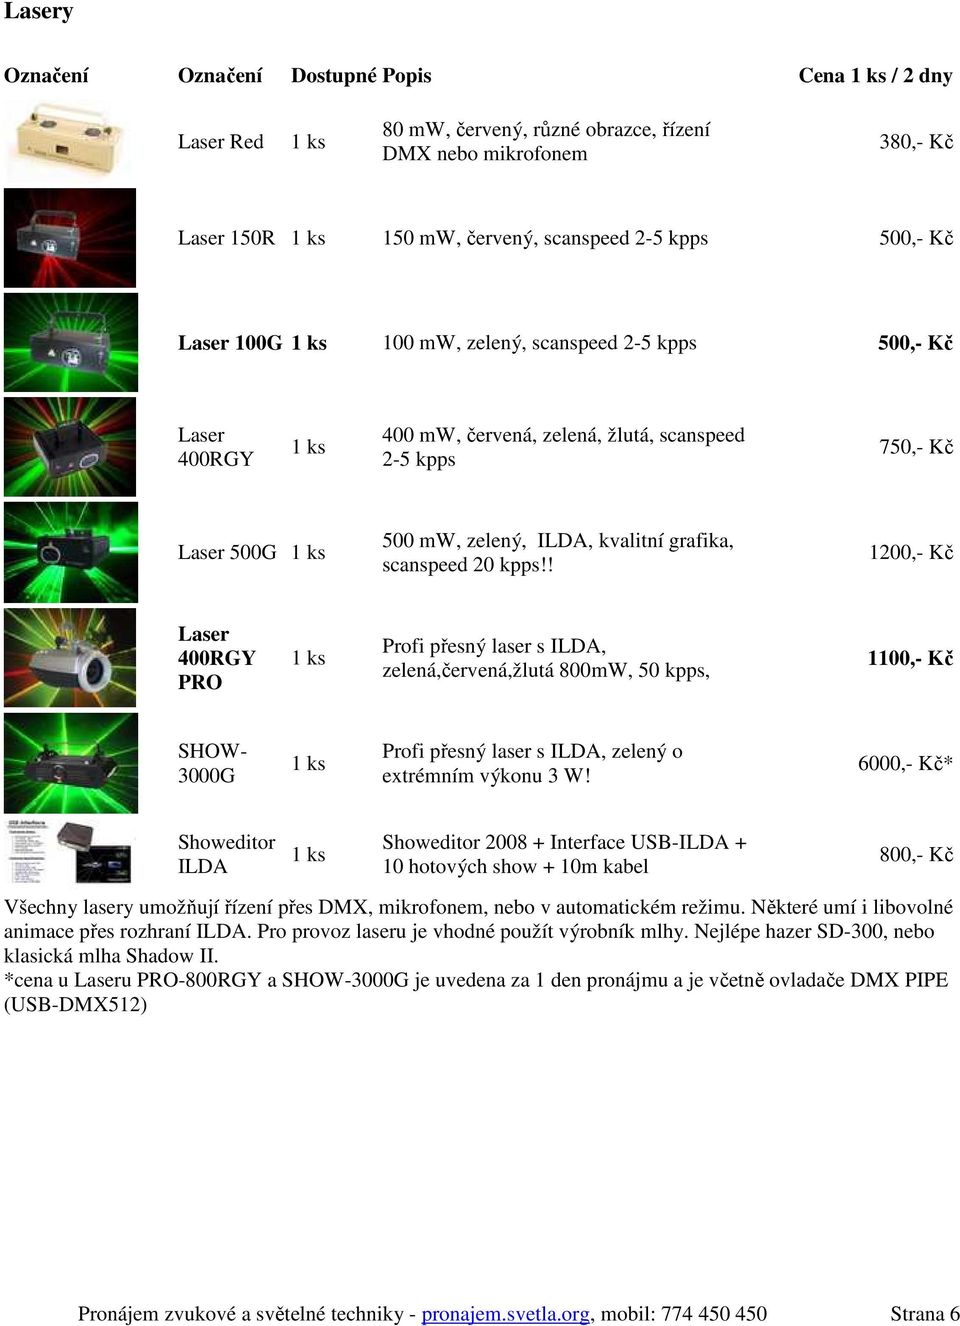 ! 1200,- Kč Laser 400RGY PRO Profi přesný laser s ILDA, zelená,červená,žlutá 800mW, 50 kpps, 1100,- Kč SHOW- 3000G Profi přesný laser s ILDA, zelený o extrémním výkonu 3 W!